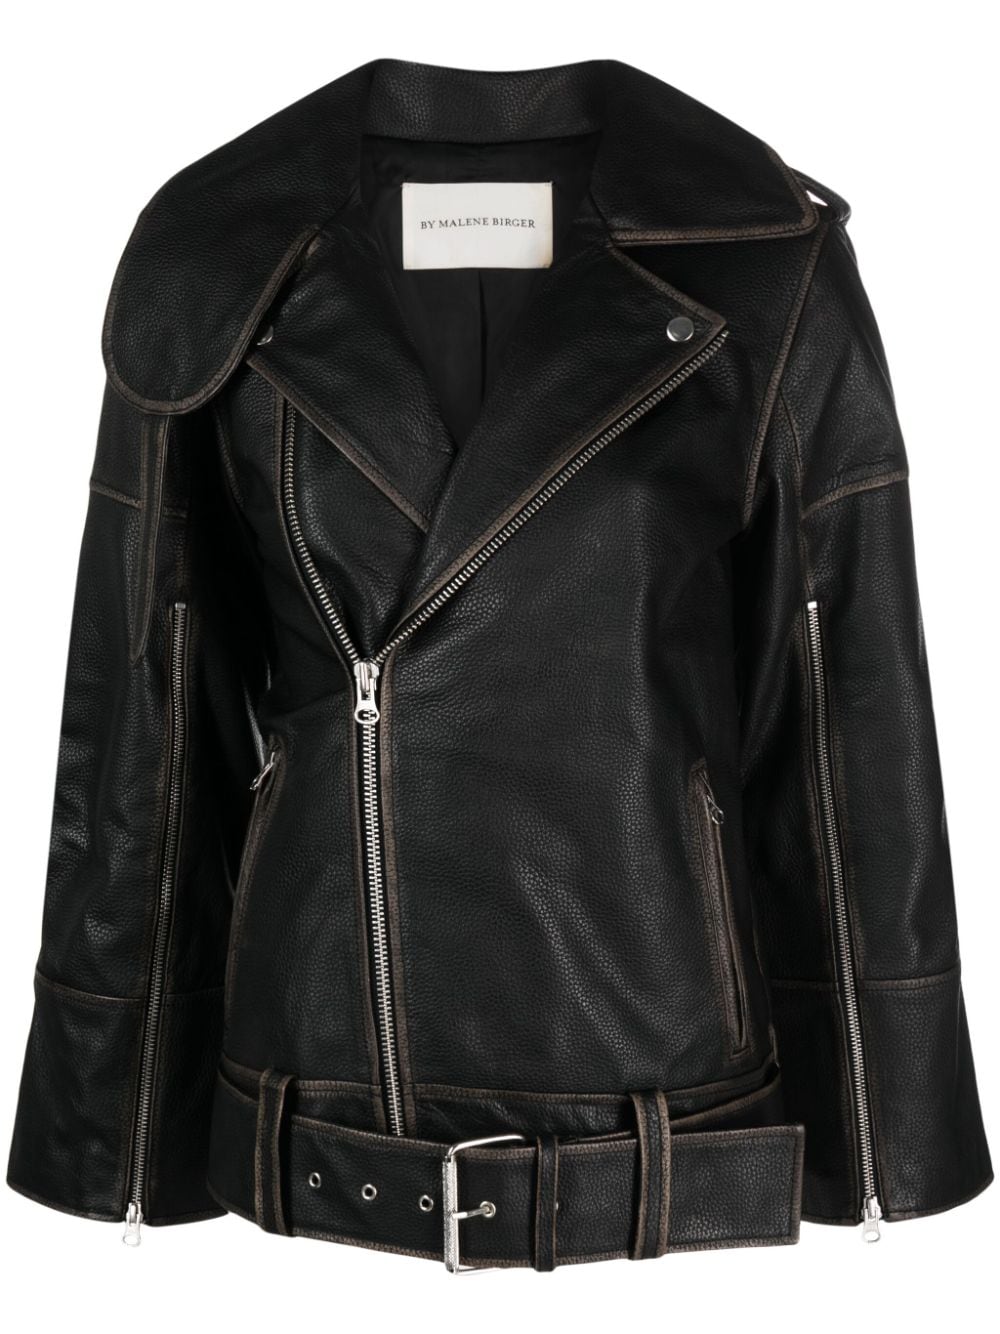 By Malene Birger Beatrisse leather biker jacket - Black von By Malene Birger